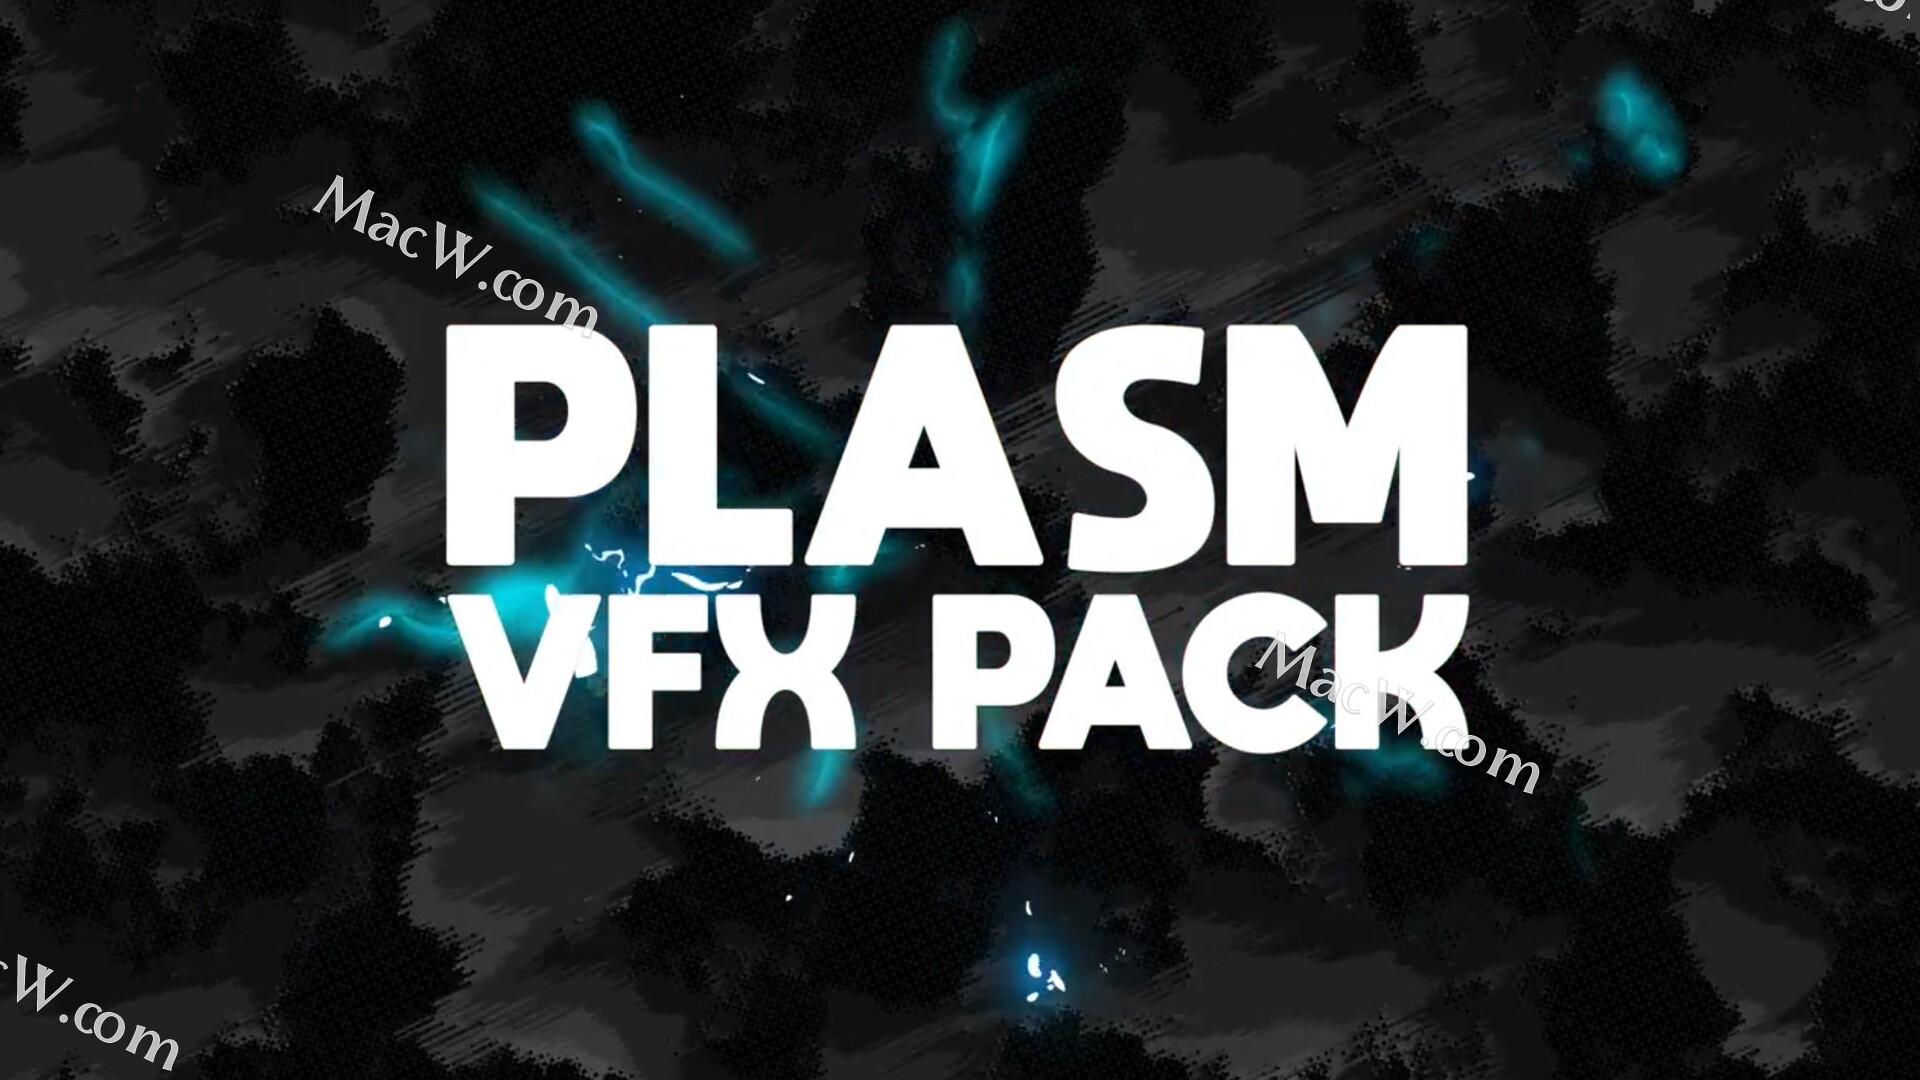 fcpx插件:彩色等离子爆炸特效包Plasma VFX Pack